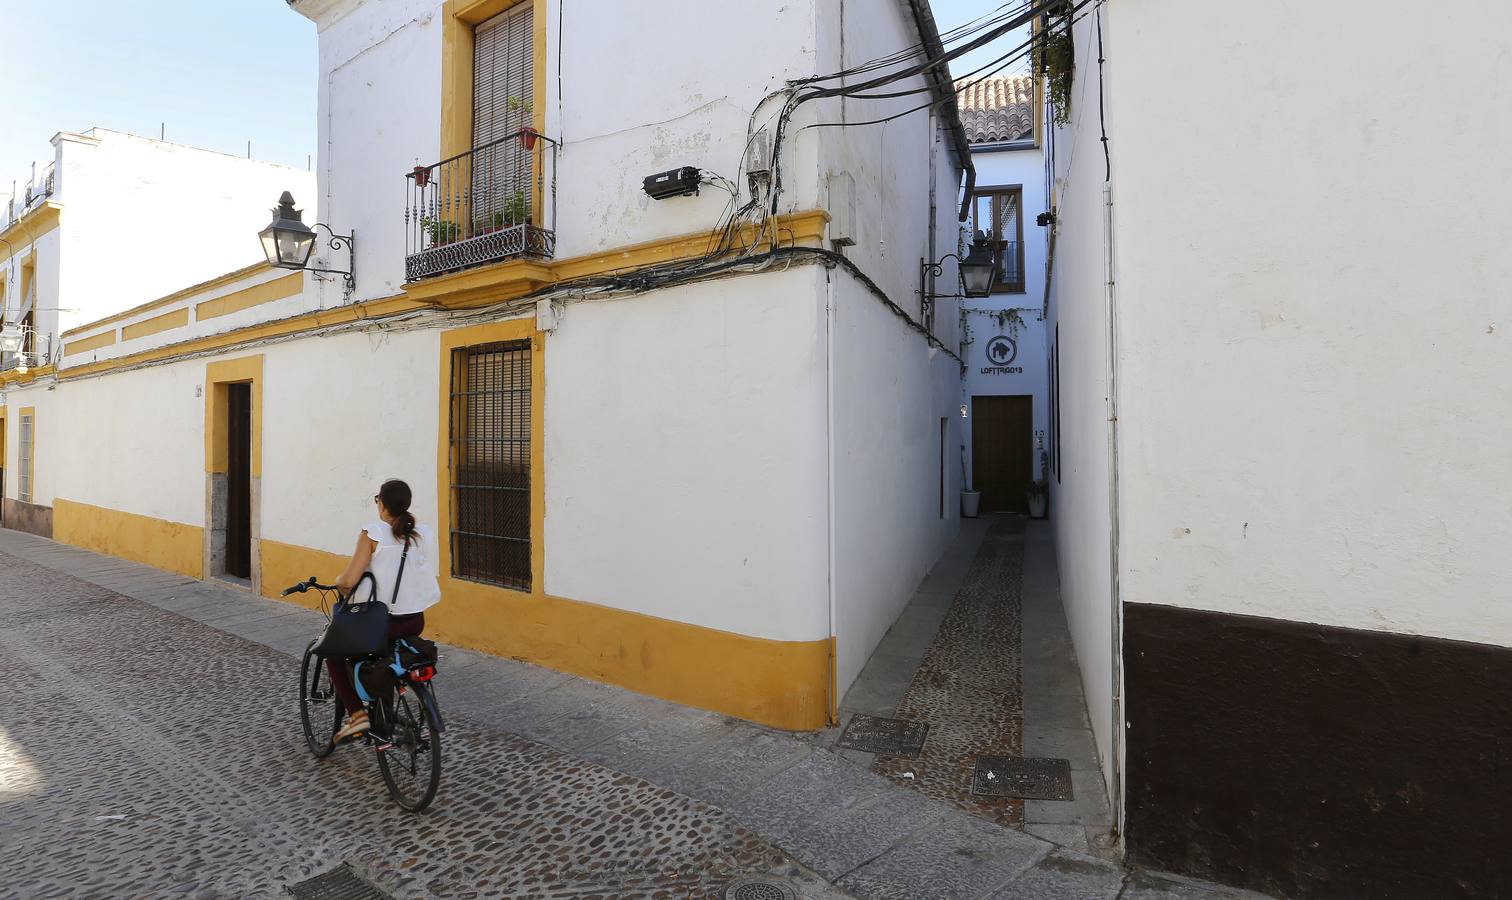 Callejas de Córdoba, el último reducto del urbanismo andalusí